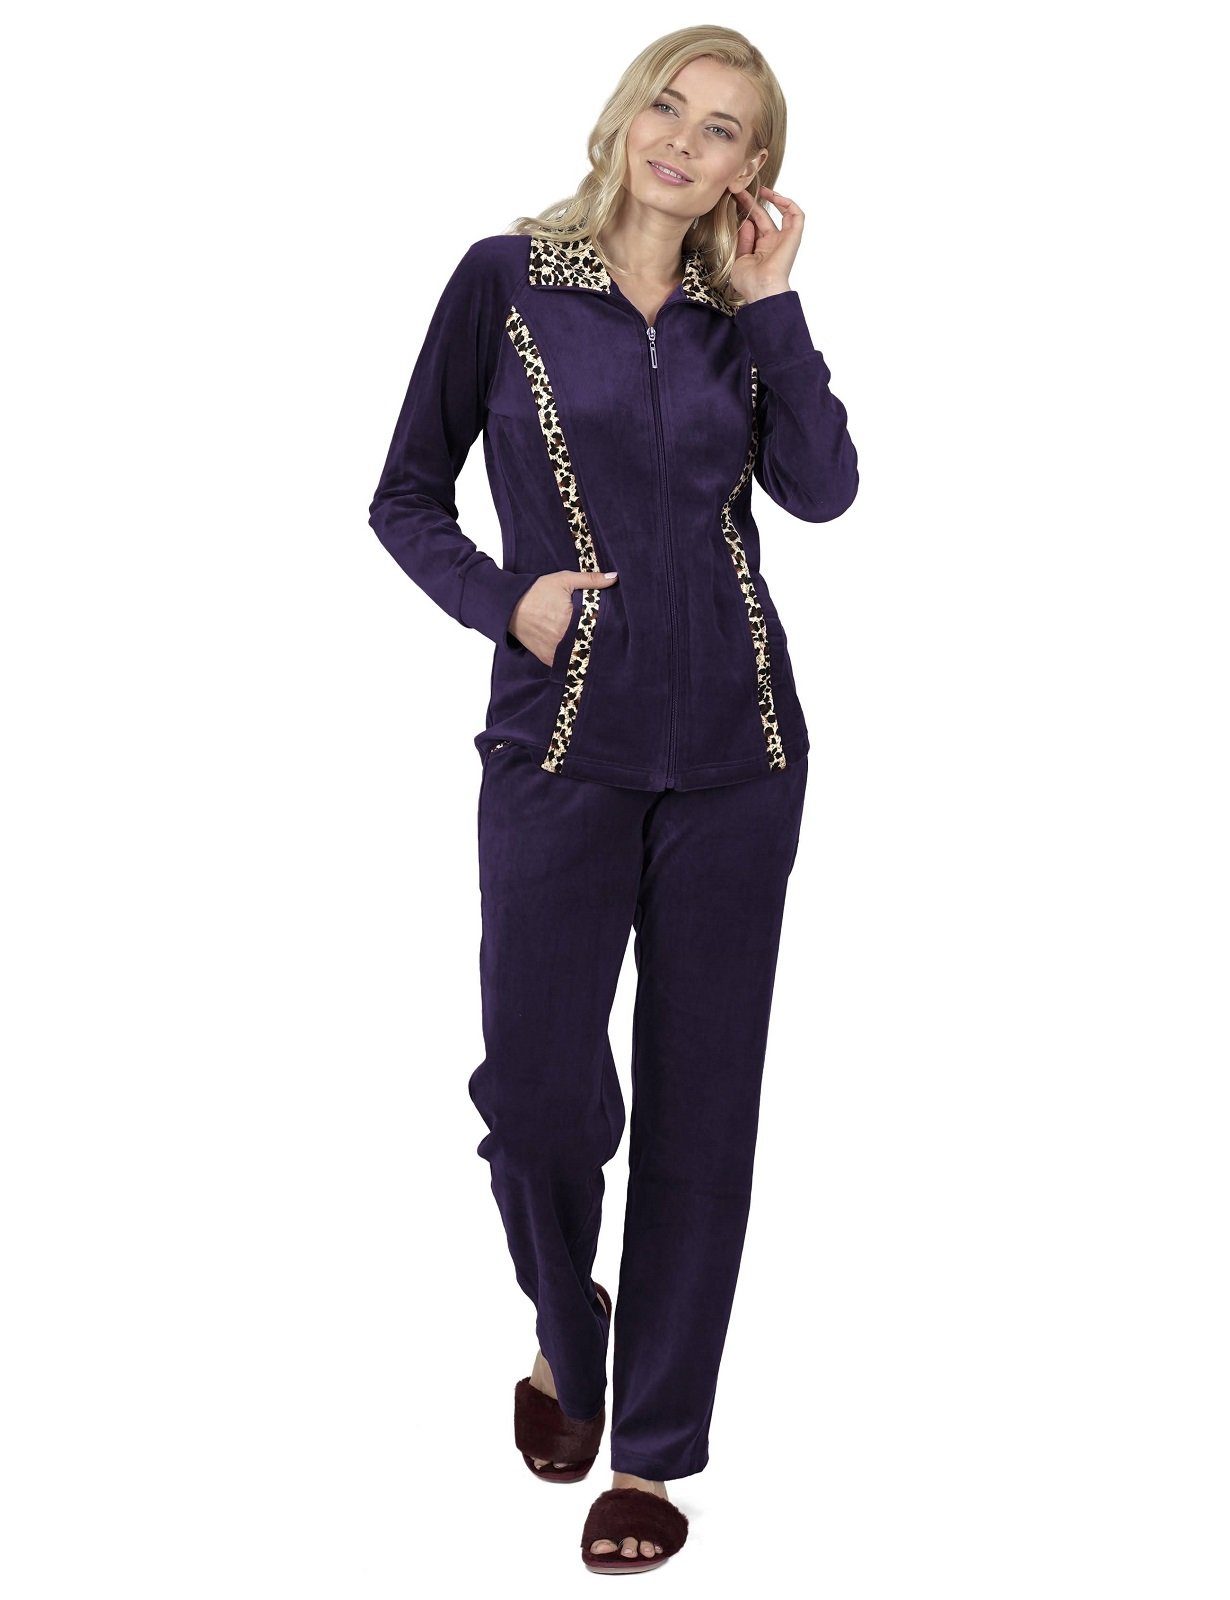 RAIKOU Hausanzug Nicki Velours Damen Hausanzug Freizeitanzug Jogginganzug (mit Reißverschluss und Leo Print, 2 tlg) weiche Baumwolle-Polyester-Gemisch dunkel lila | Pyjama-Sets